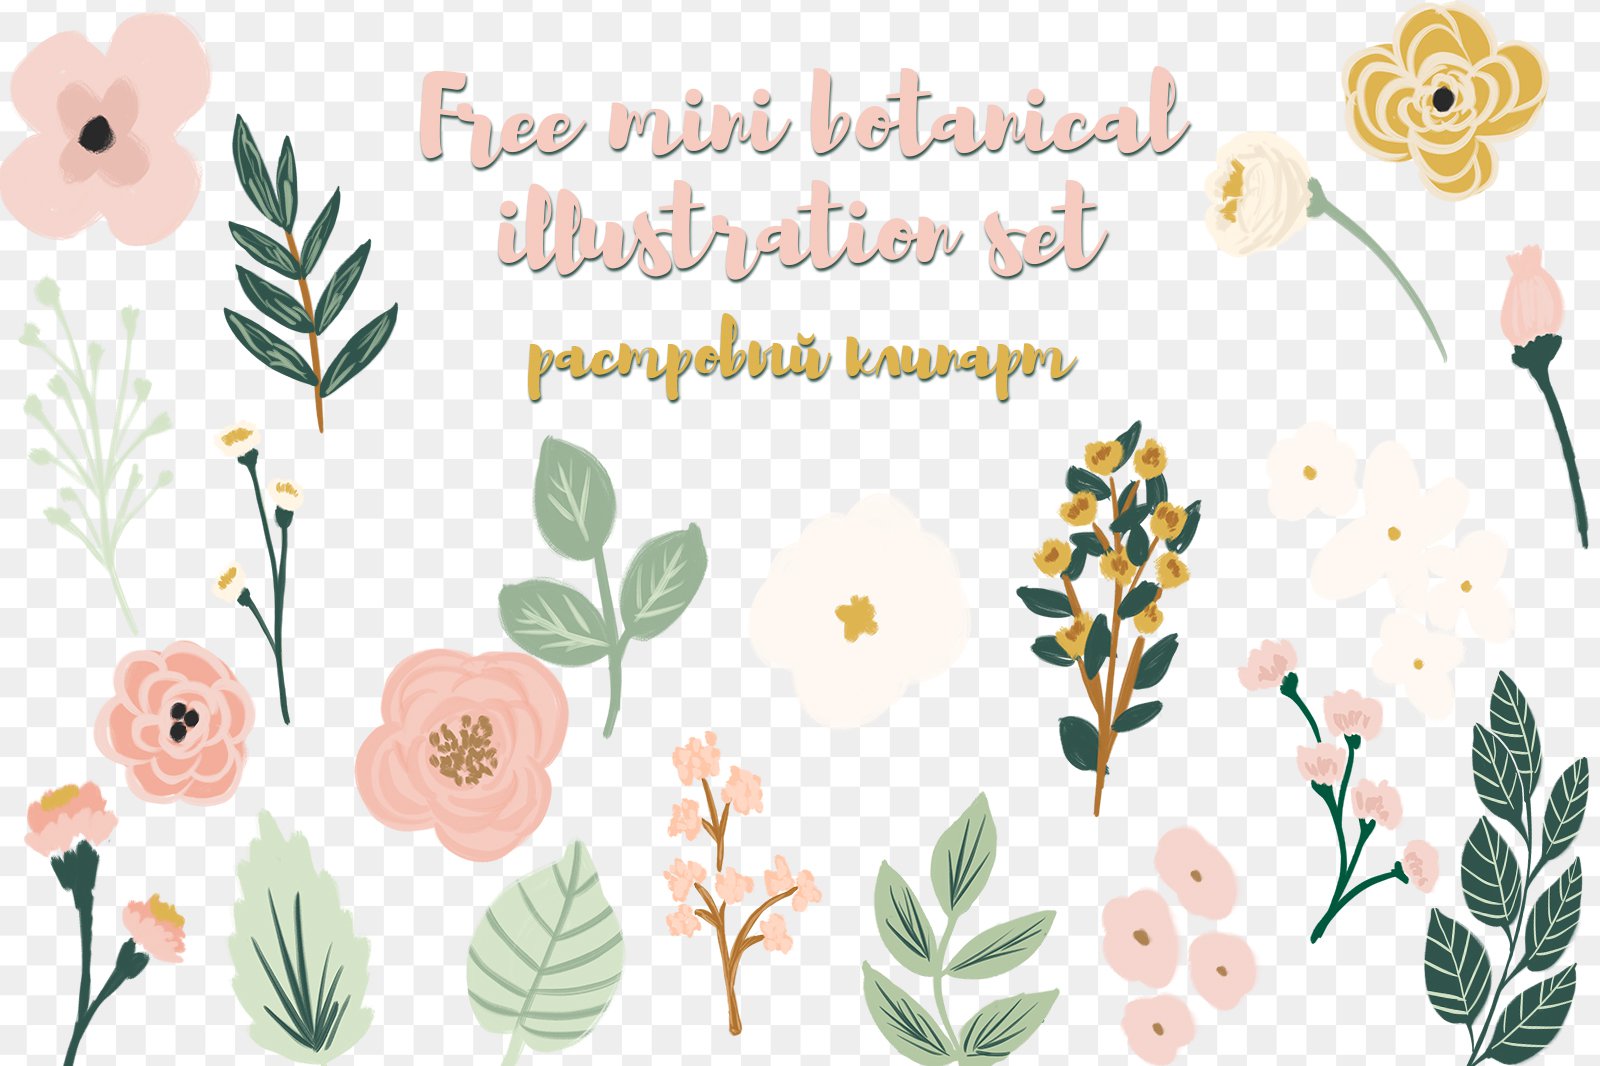 Free mini botanical illustration set растровый клипарт скачать